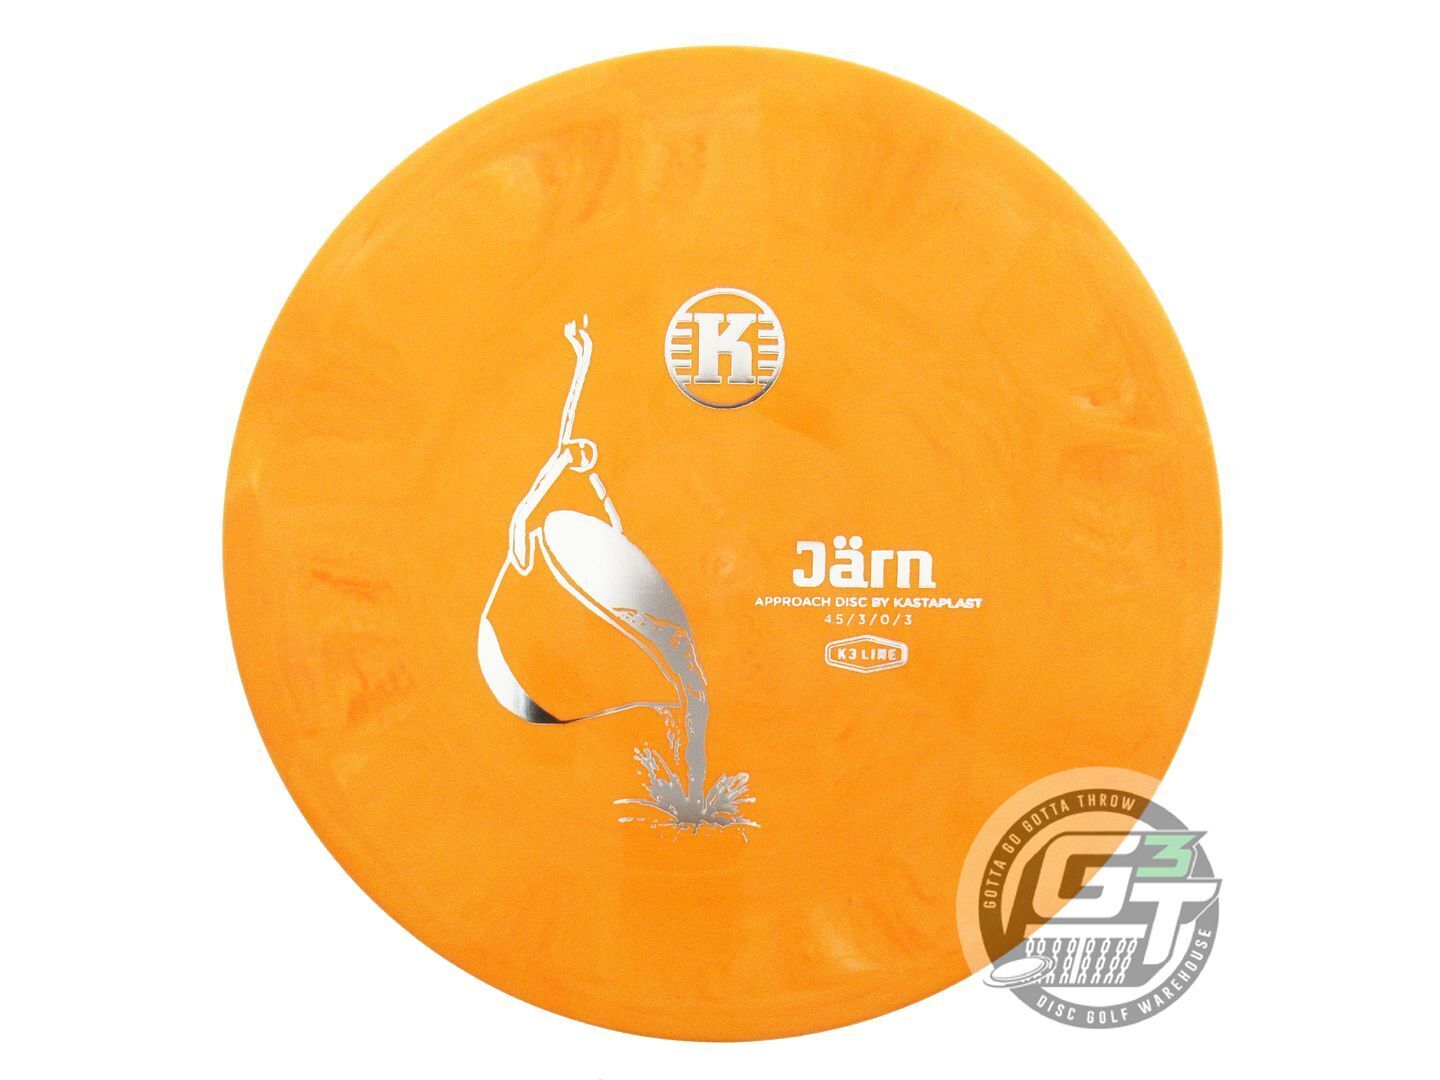 Kastaplast K3 Jarn Midrange Golf Disc (Individually Listed)